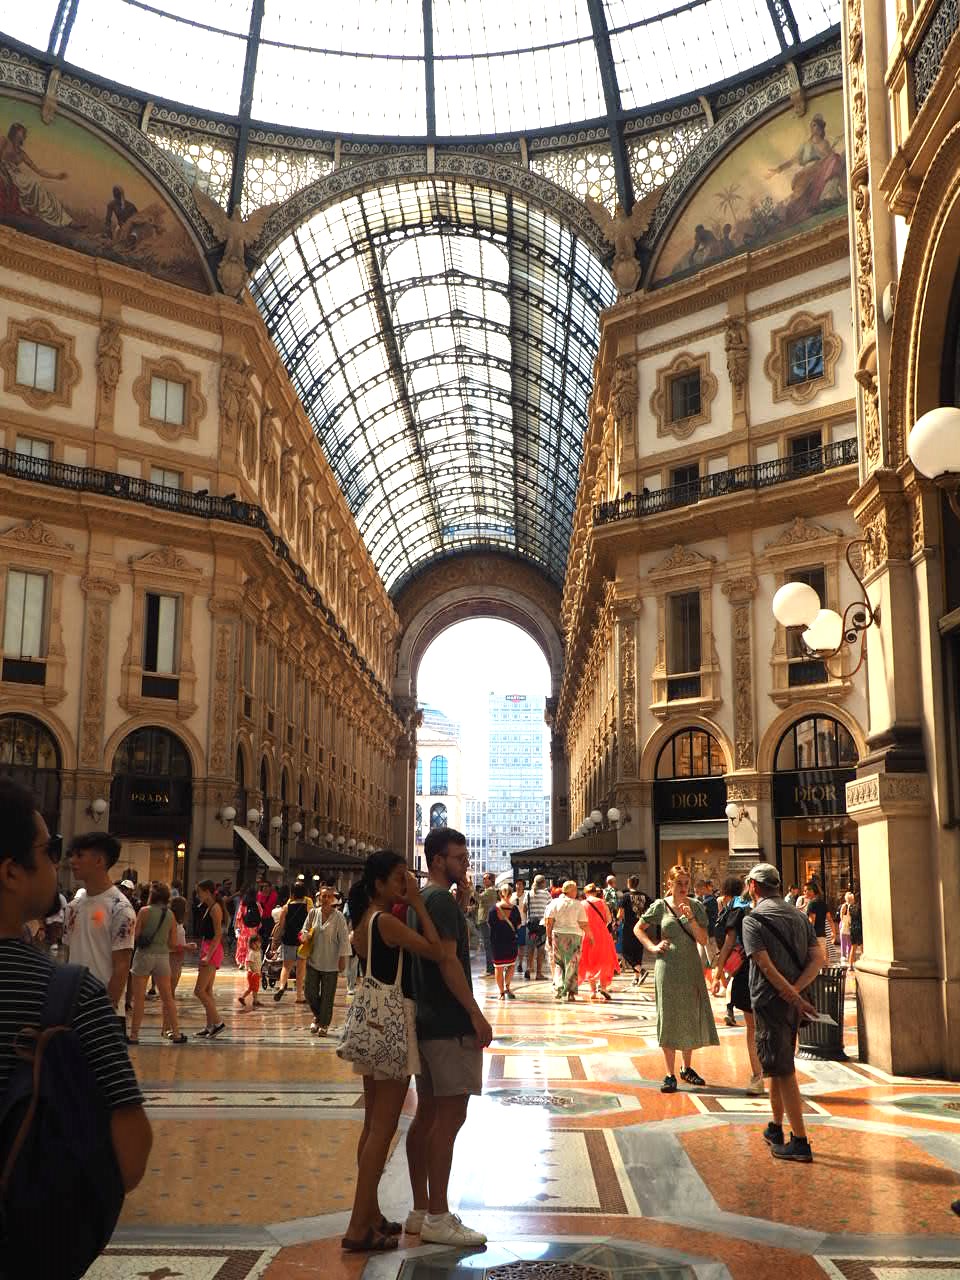 interieur-architecture-Gallerie-Vittorio-Emanuele-II-Milan